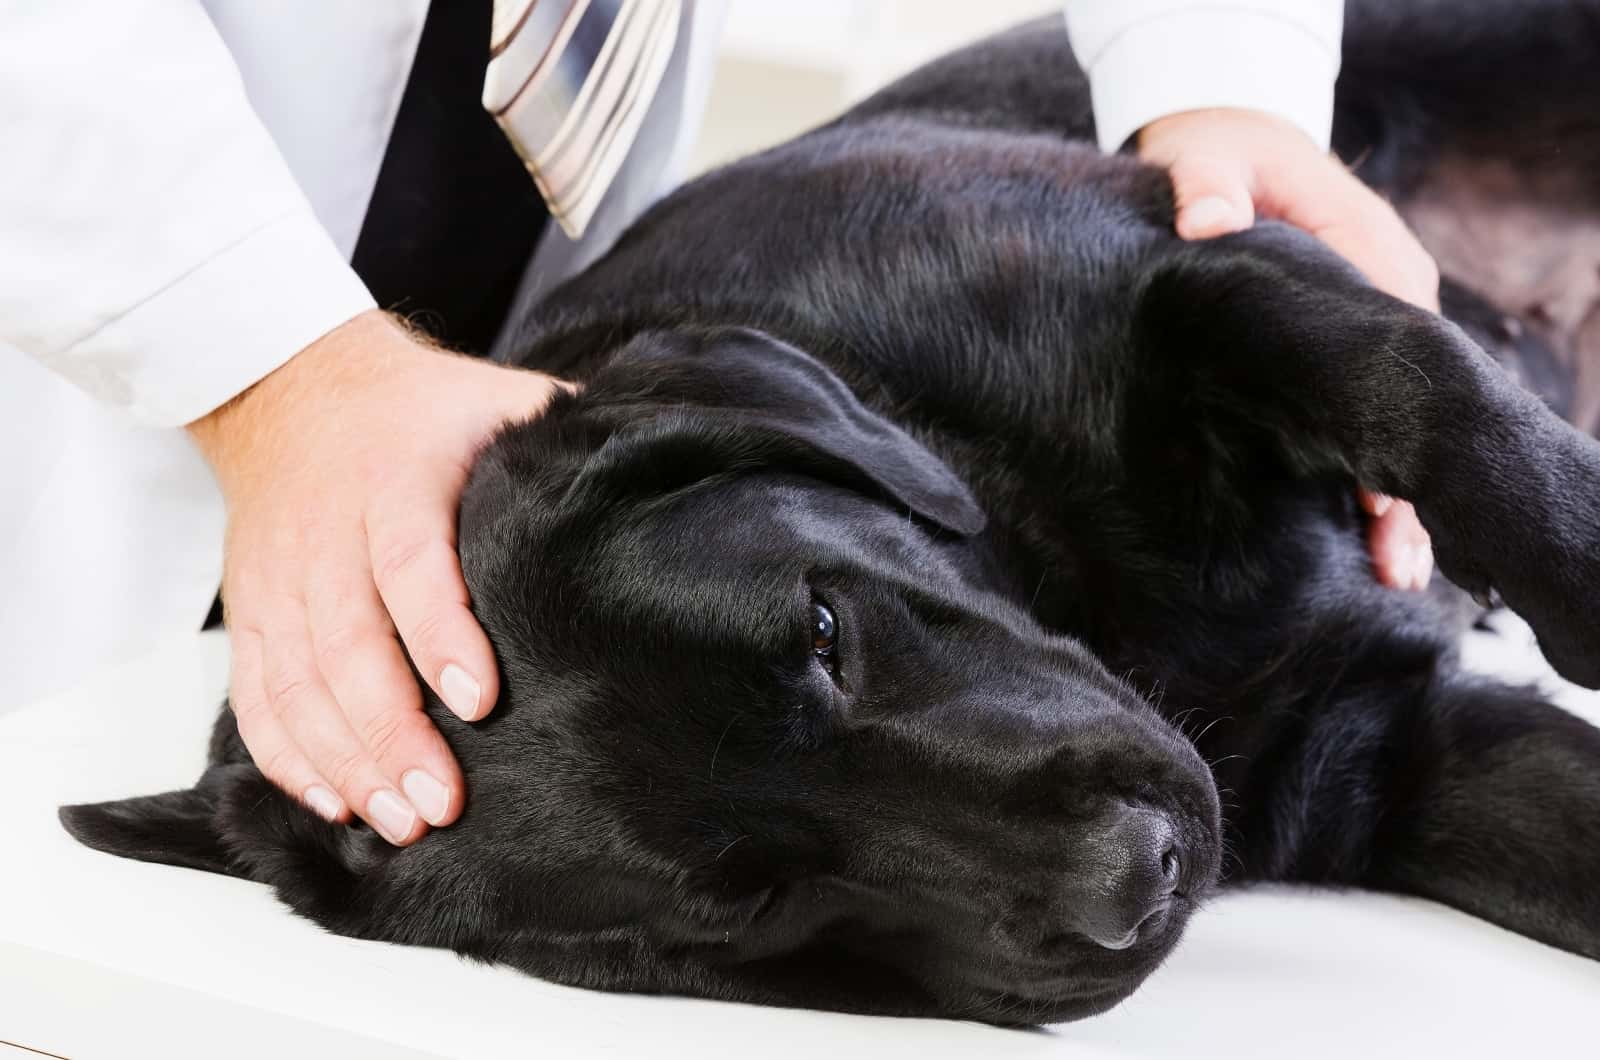 vet examining sick dog